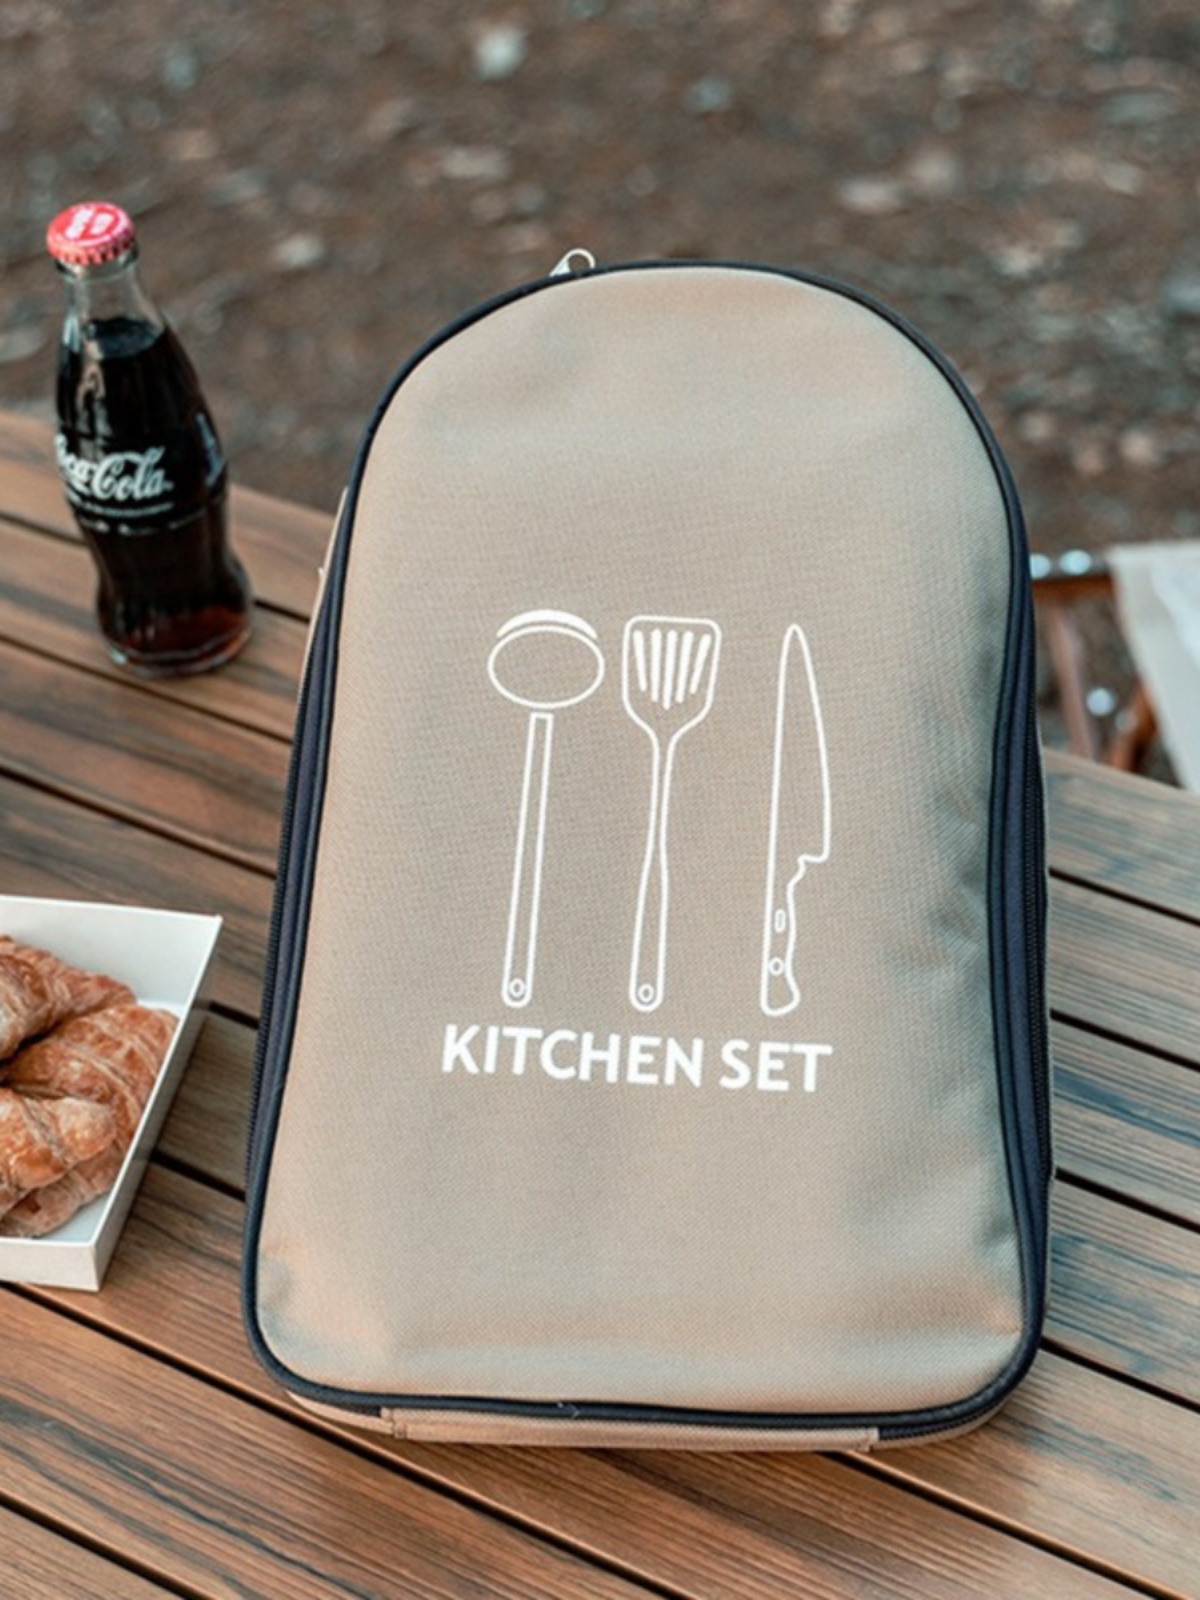 户外炊具野营厨具便携套装不锈钢餐具露营野餐收纳包野外旅行菜板